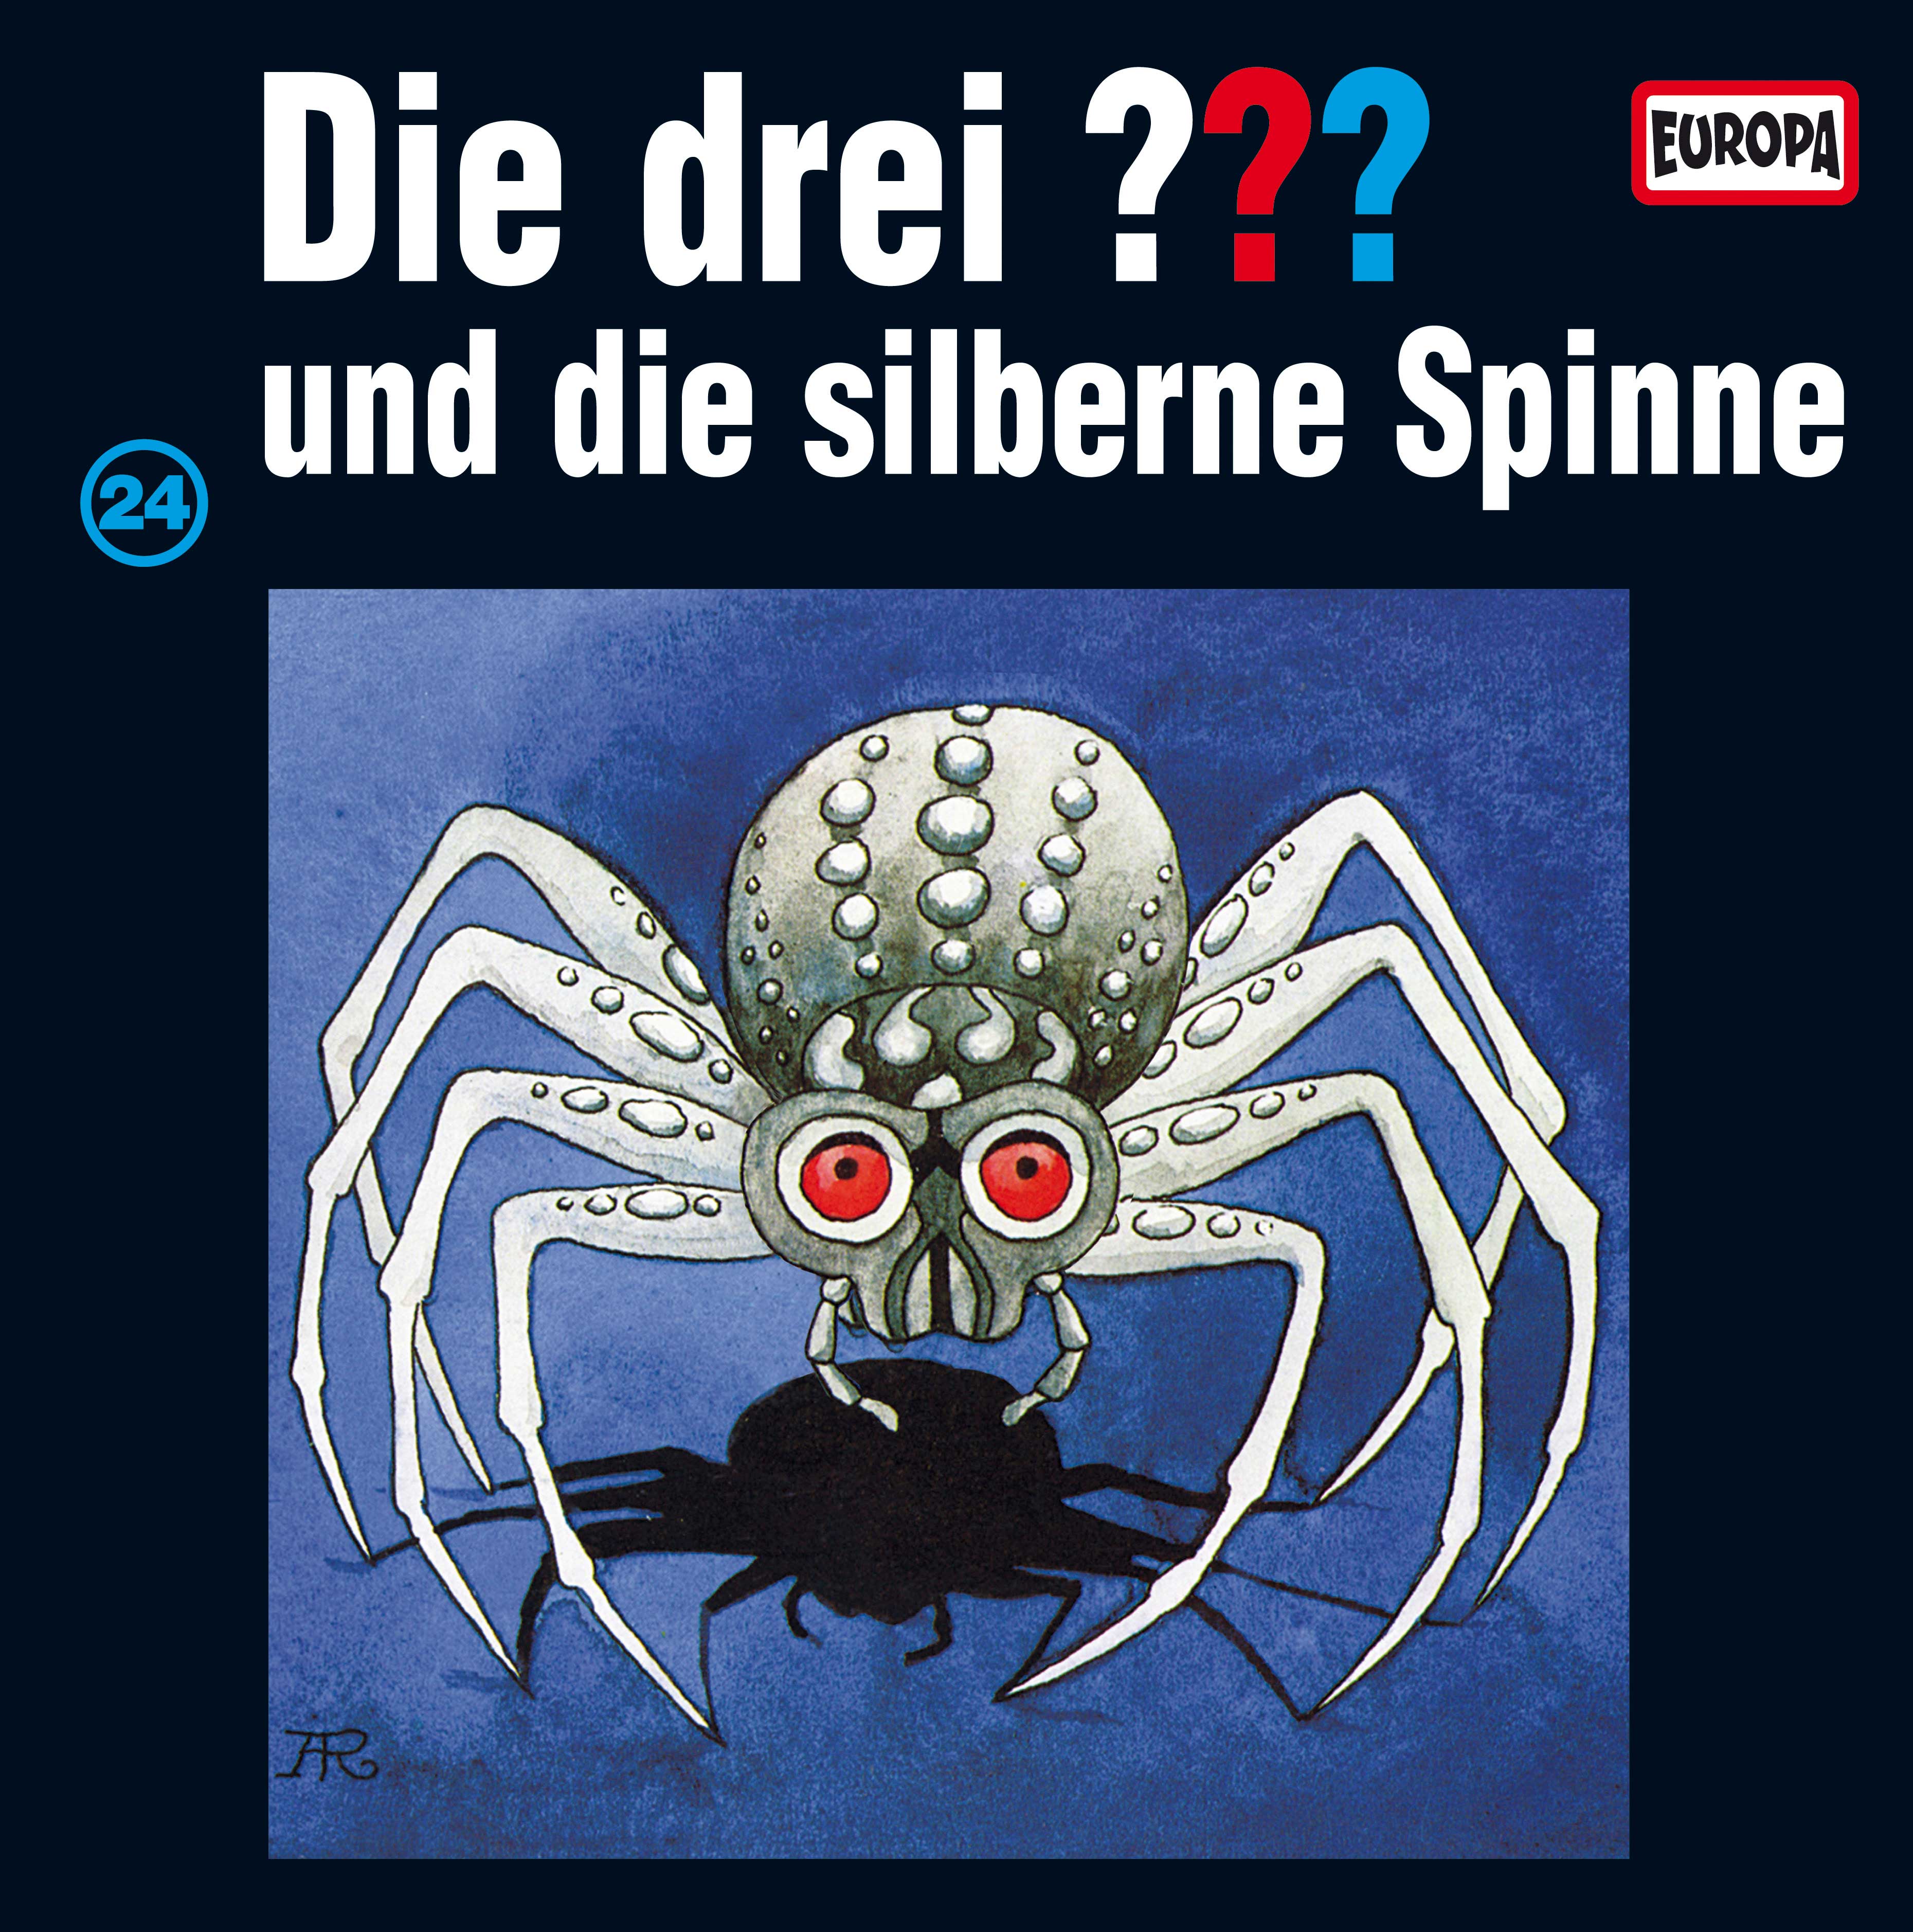 Die drei ???: und die silberne Spinne (Picture Vinyl)